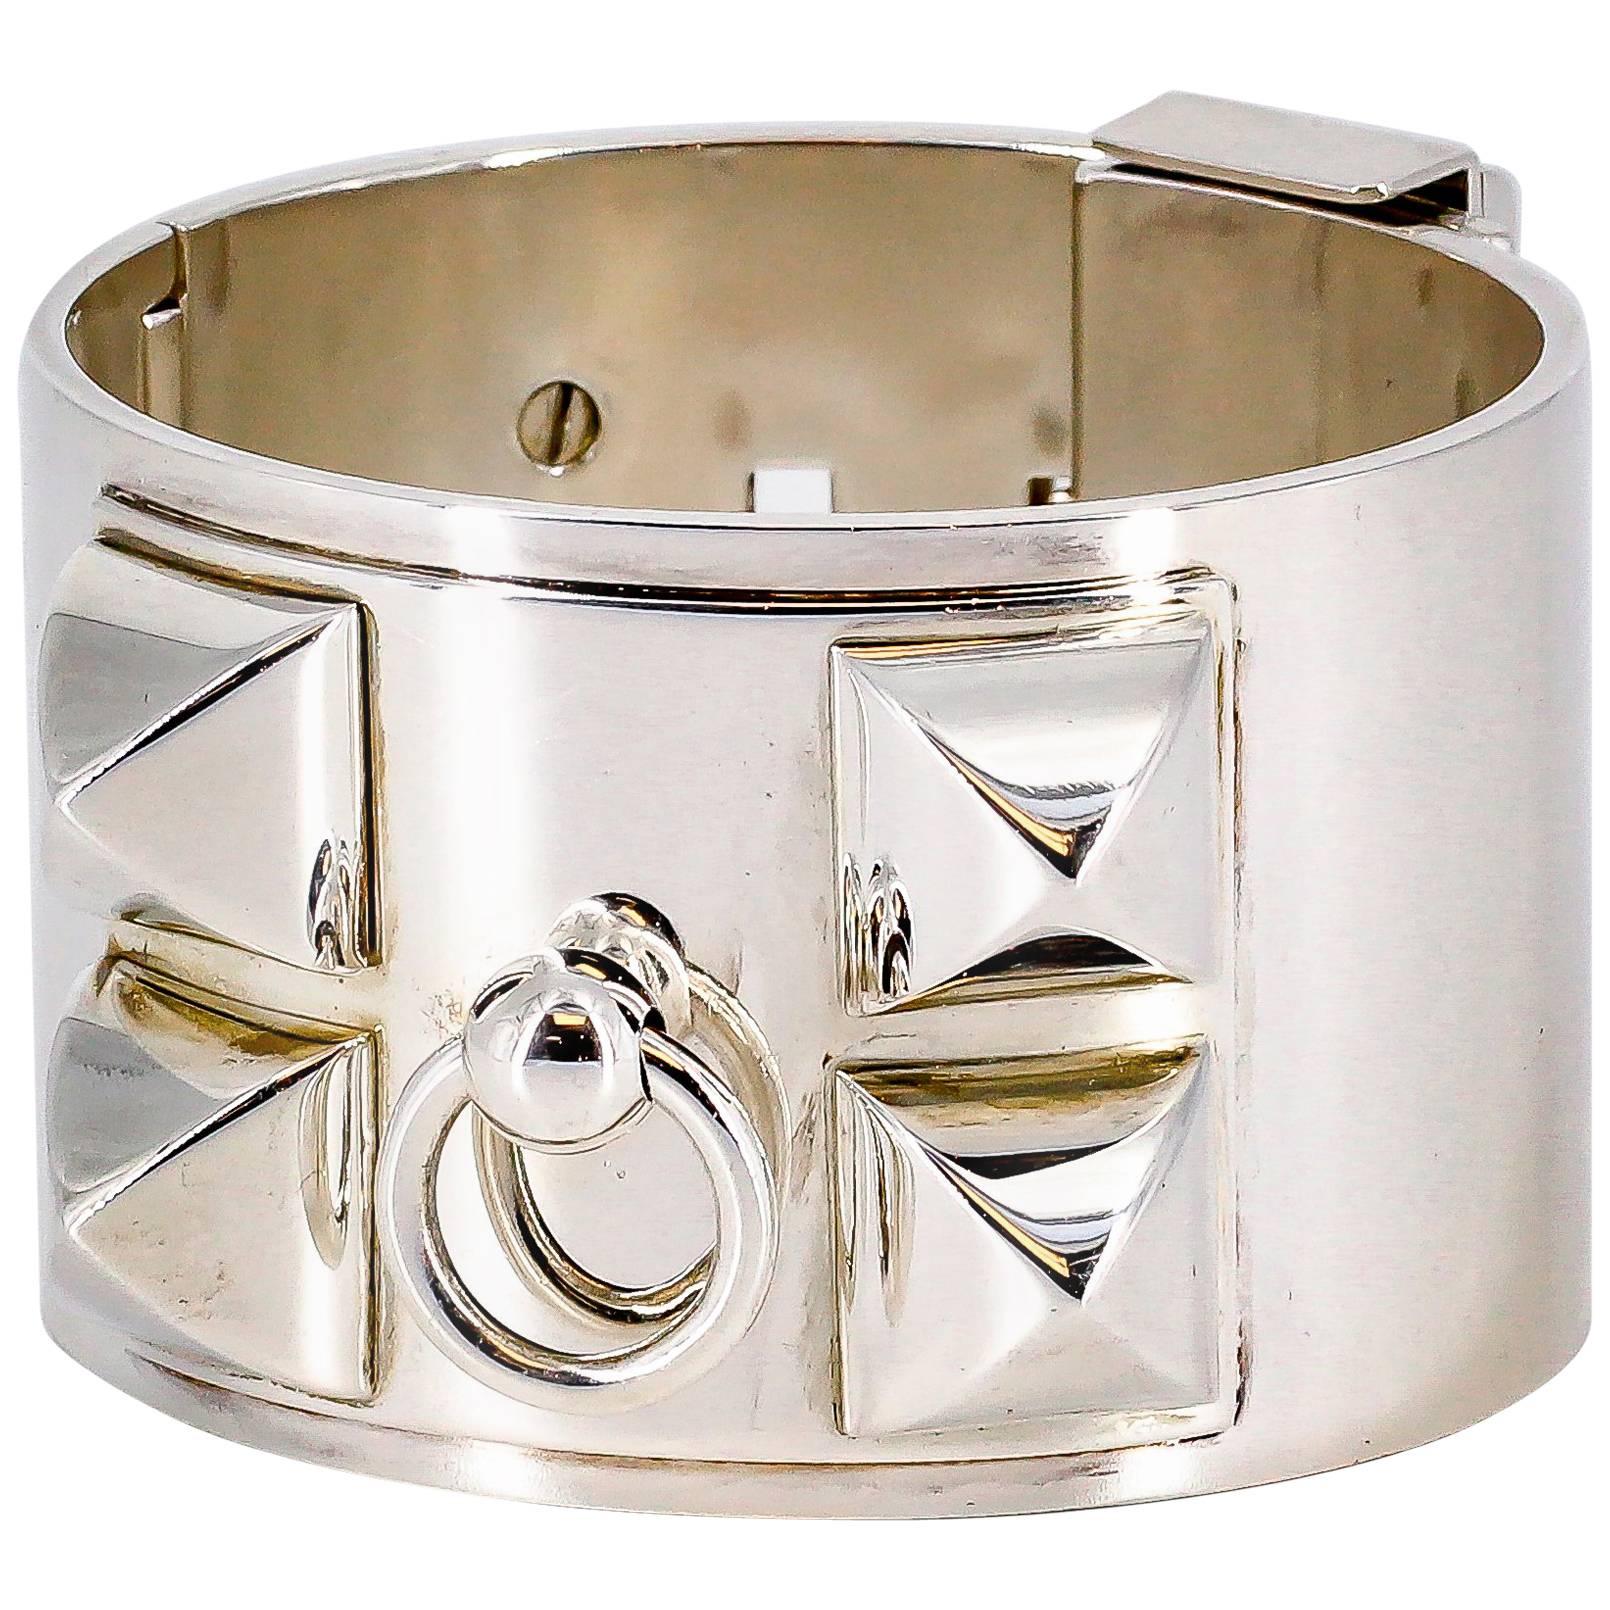 Hermes Collier de Chien Sterling Silver Large Studded Bracelet